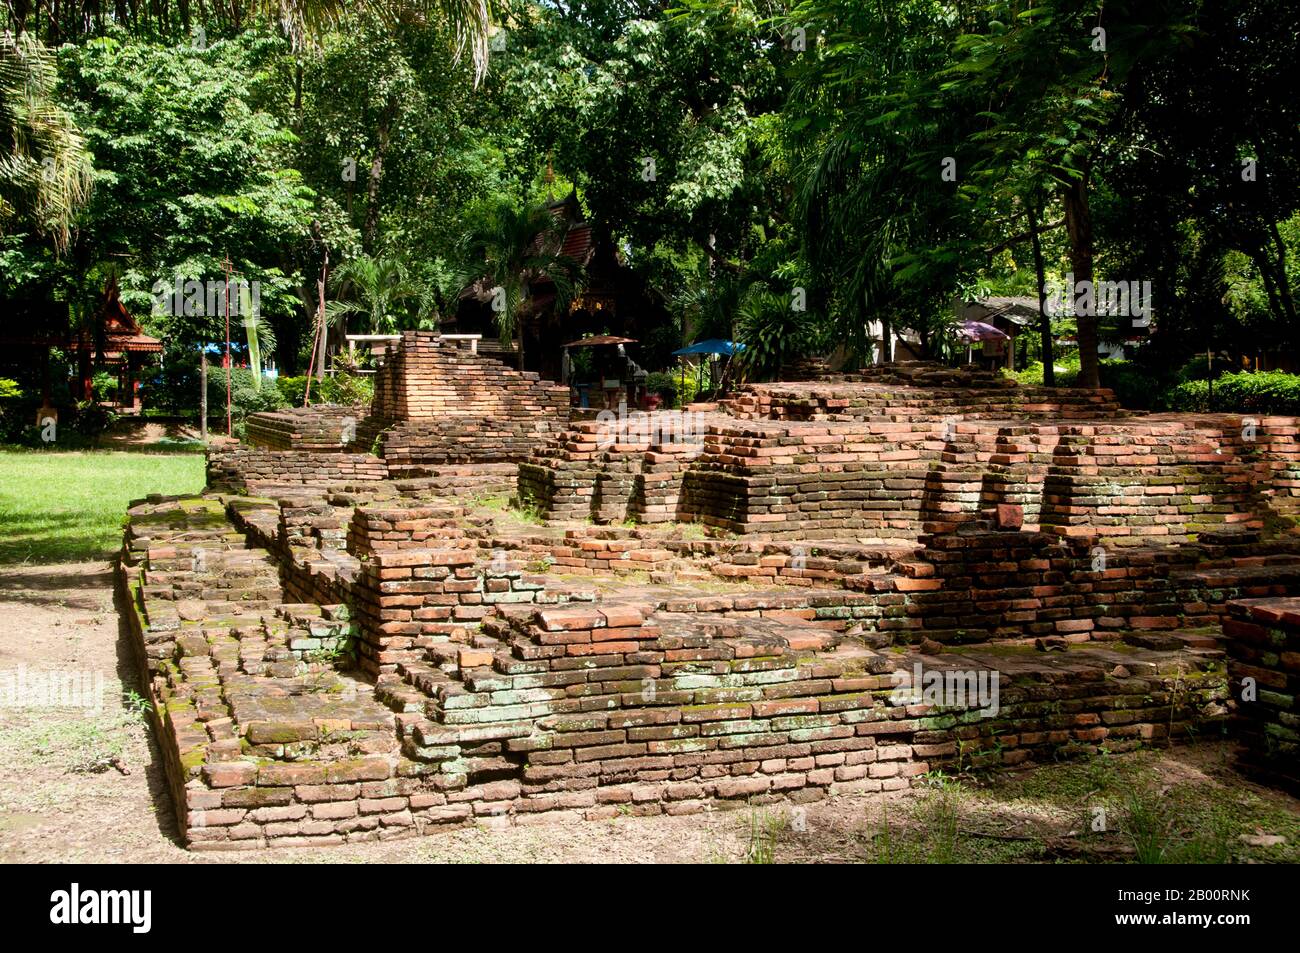 Thailand: Wat Changkam, Wiang Kum Kam, Chiang Mai. Im späten 13. Jahrhundert u.Z. aufgegeben und heute in Ruinen, war Wiang Kum kam einst die Hauptstadt der nördlichen Region Thailands und liegt südlich von Chiang Mai. Es wurde von König Mangrai zu einer Zeit im 13. Jahrhundert nach seinem Sieg über das Hariphunchai Königreich des modernen Lamphun gebaut. Doch nachdem die Stadt mehrere Male überflutet hatte, entschied sich Mangrai, die Hauptstadt seines Königreichs umzusiedeln und verlegte sie weiter nördlich am Fluss Ping zu einem Ort, der jetzt die Stadt Chiang Mai ist. Stockfoto